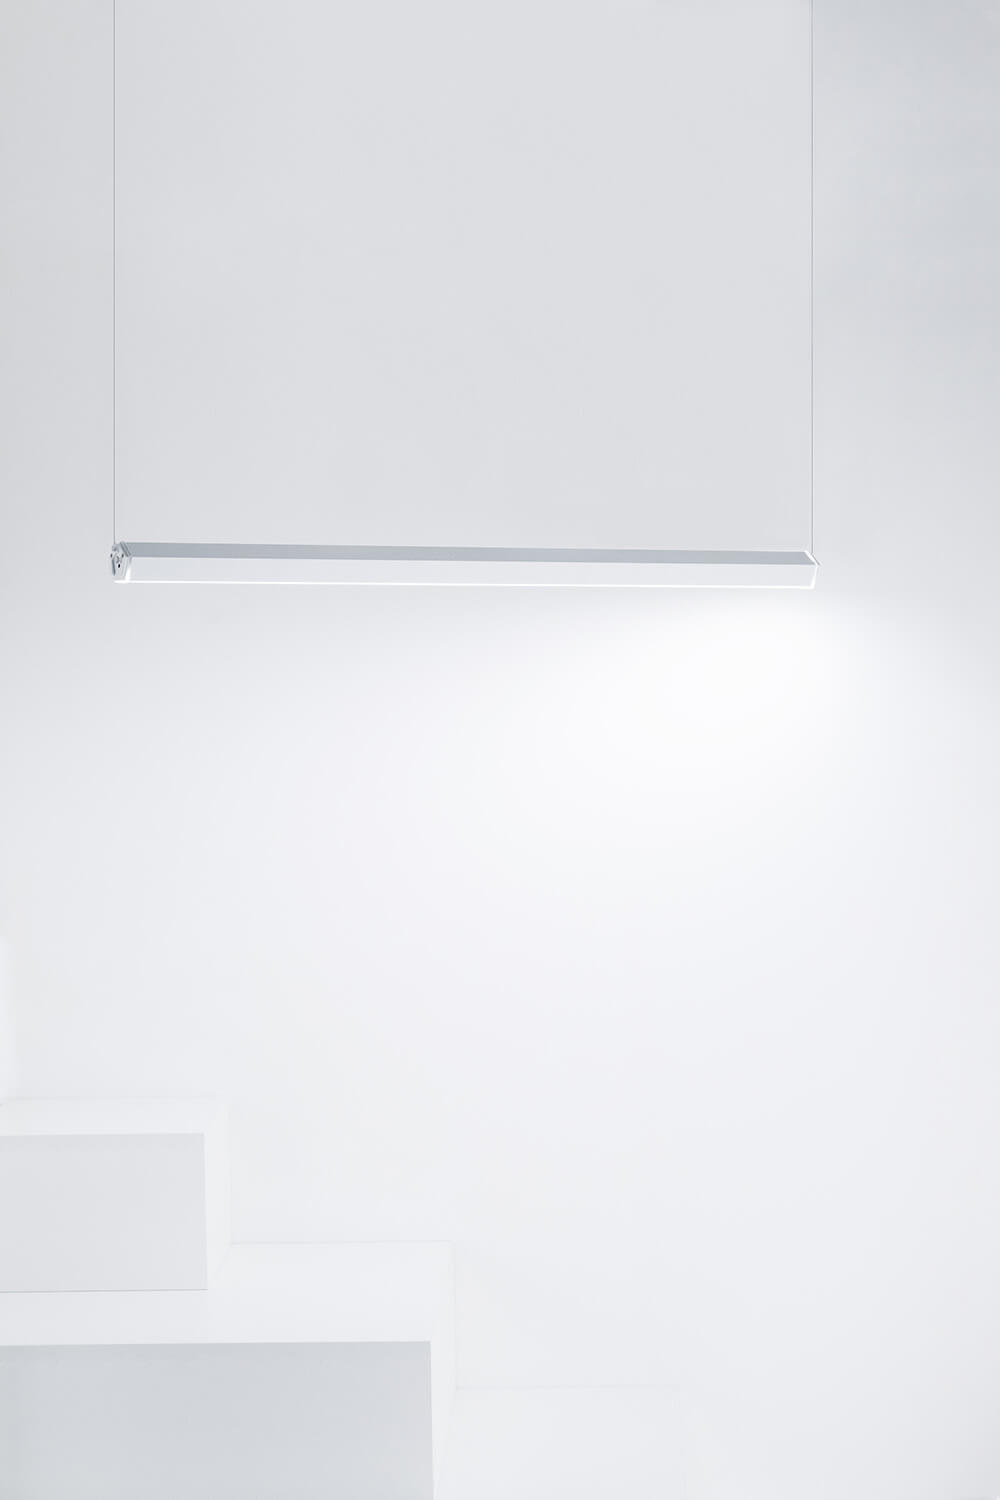 Deckenhalterung - Horizontale  Installation der Zafferano Pencil LED-Leuchte - Grigio Scuro / Dark Grey